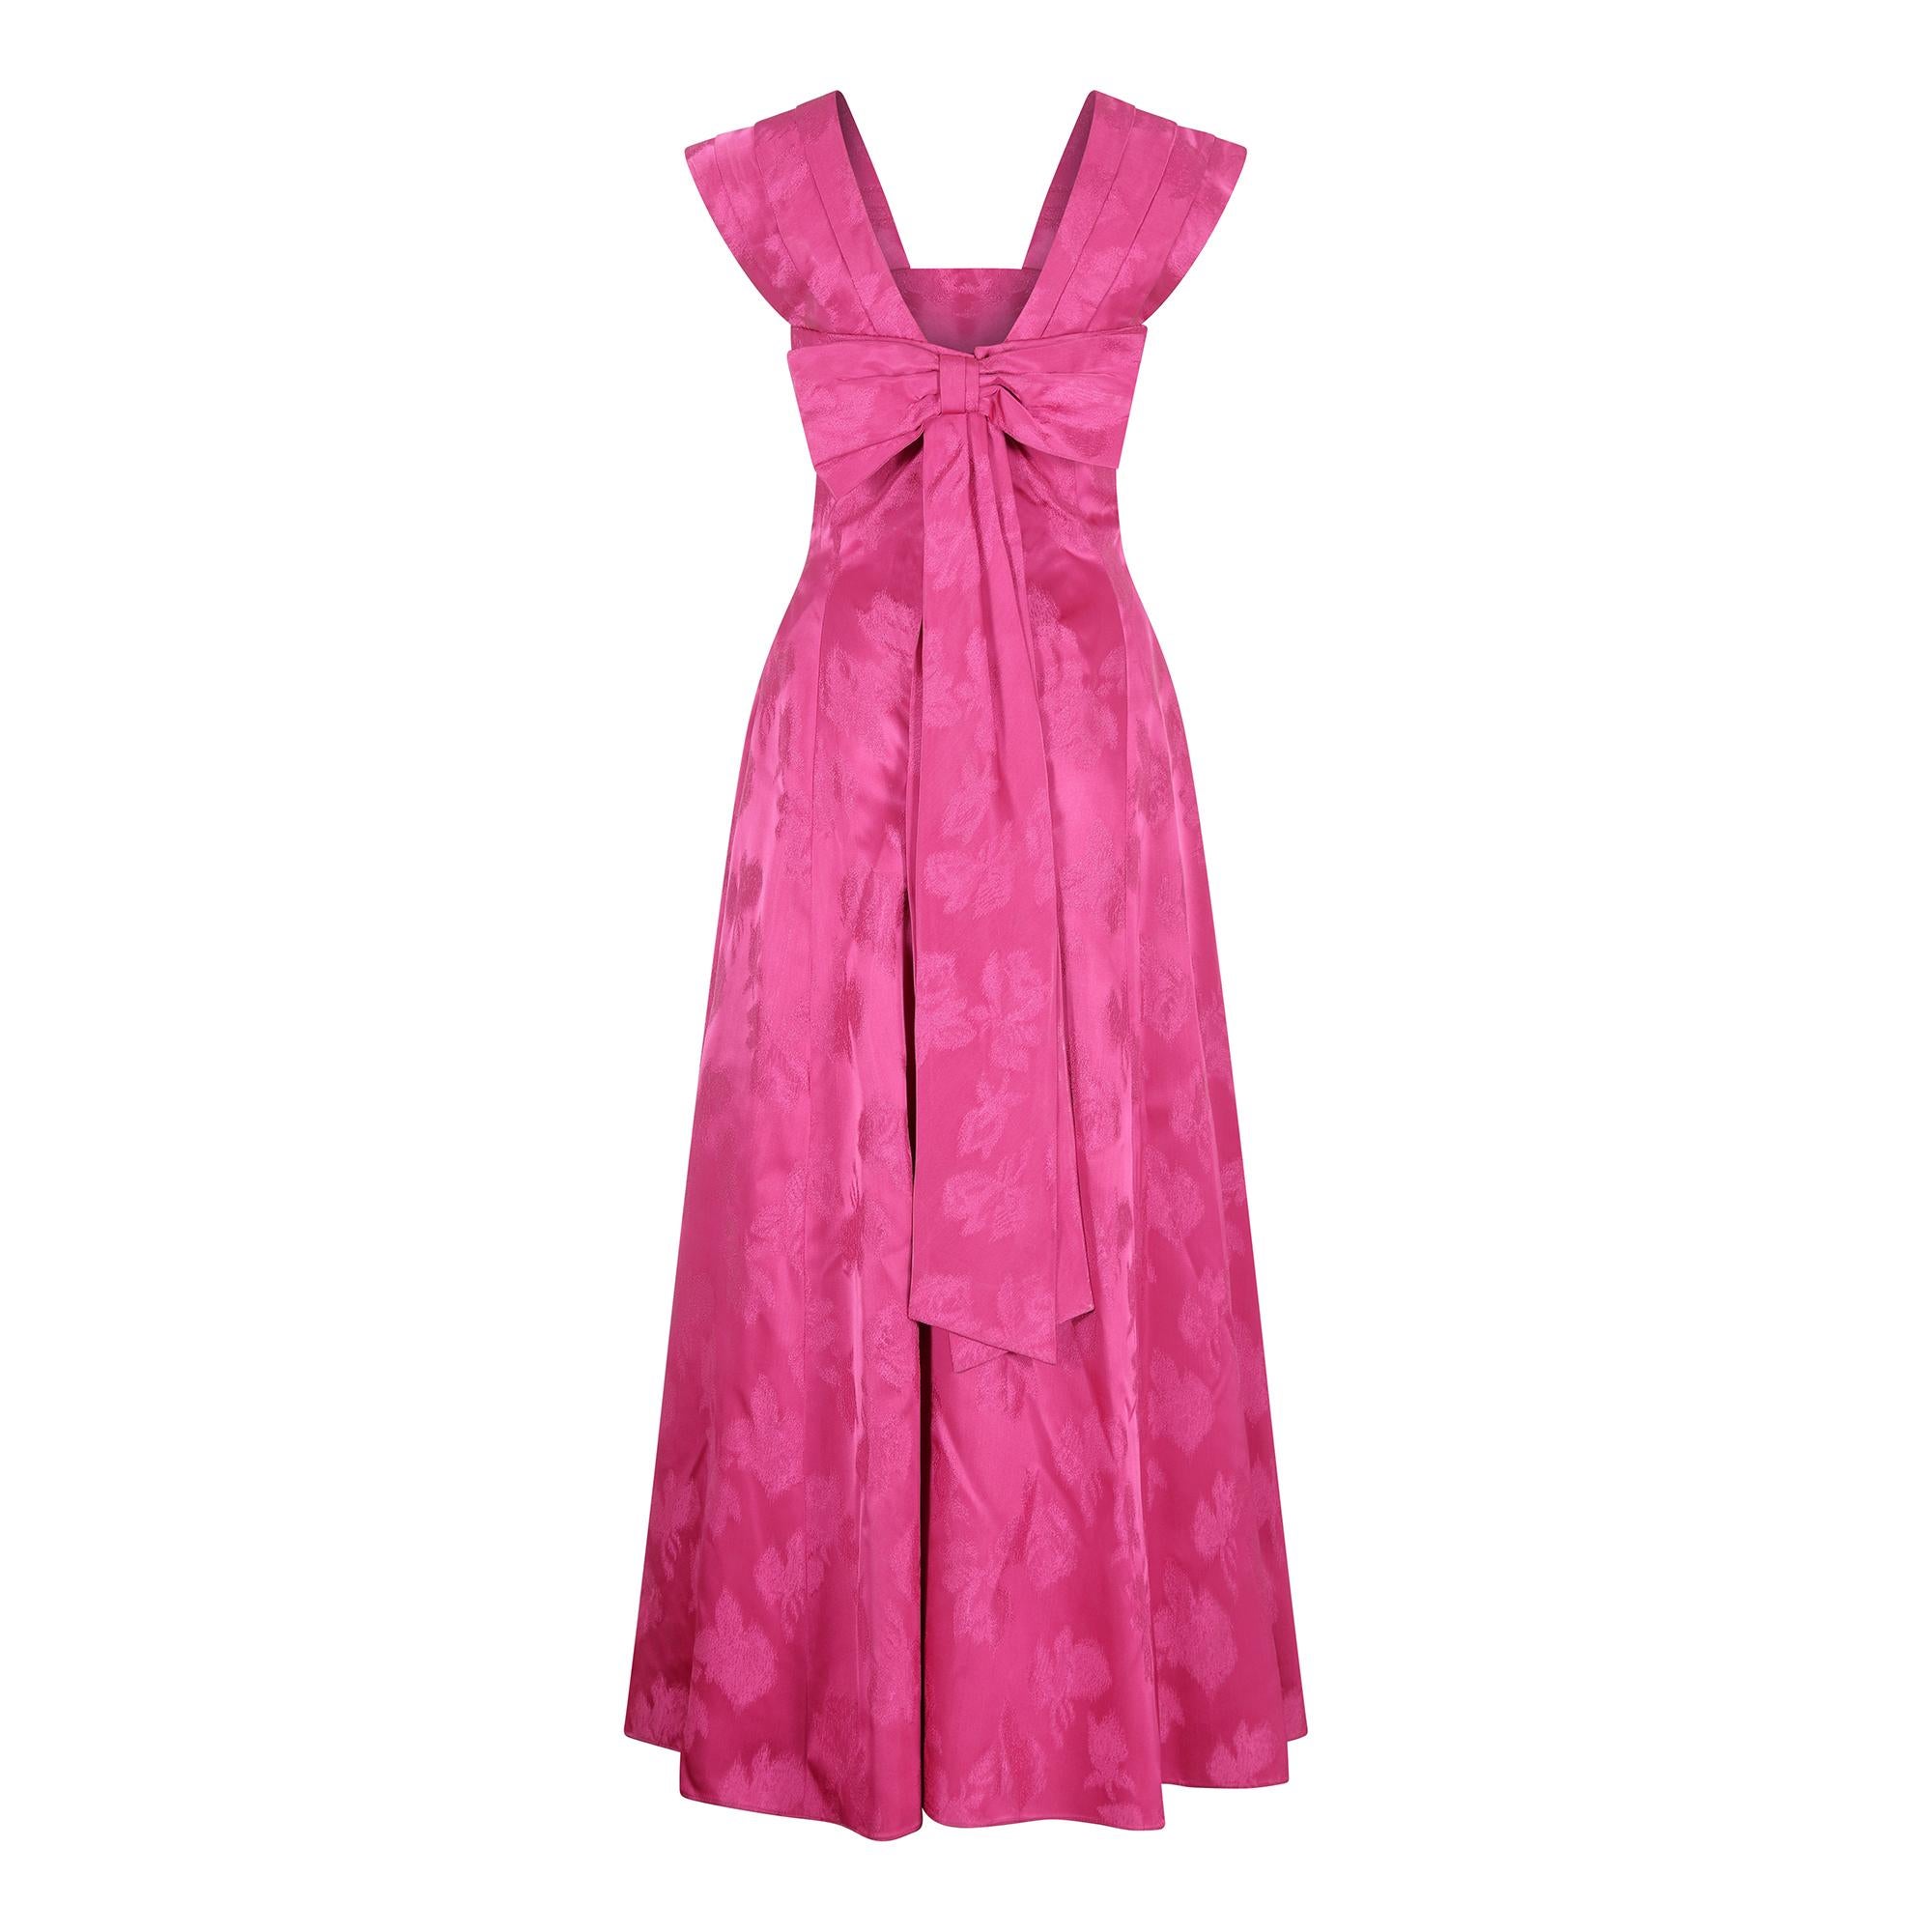 Ein prächtiges, magentafarbenes Abendkleid aus Satin mit Blumendruck aus der Mitte der 1950er Jahre.  Formelle Kleidung aus dieser Ära wird immer schwieriger zu beschaffen, und dies ist ein wunderschön gemachtes Abendkleid mit guter Technik und